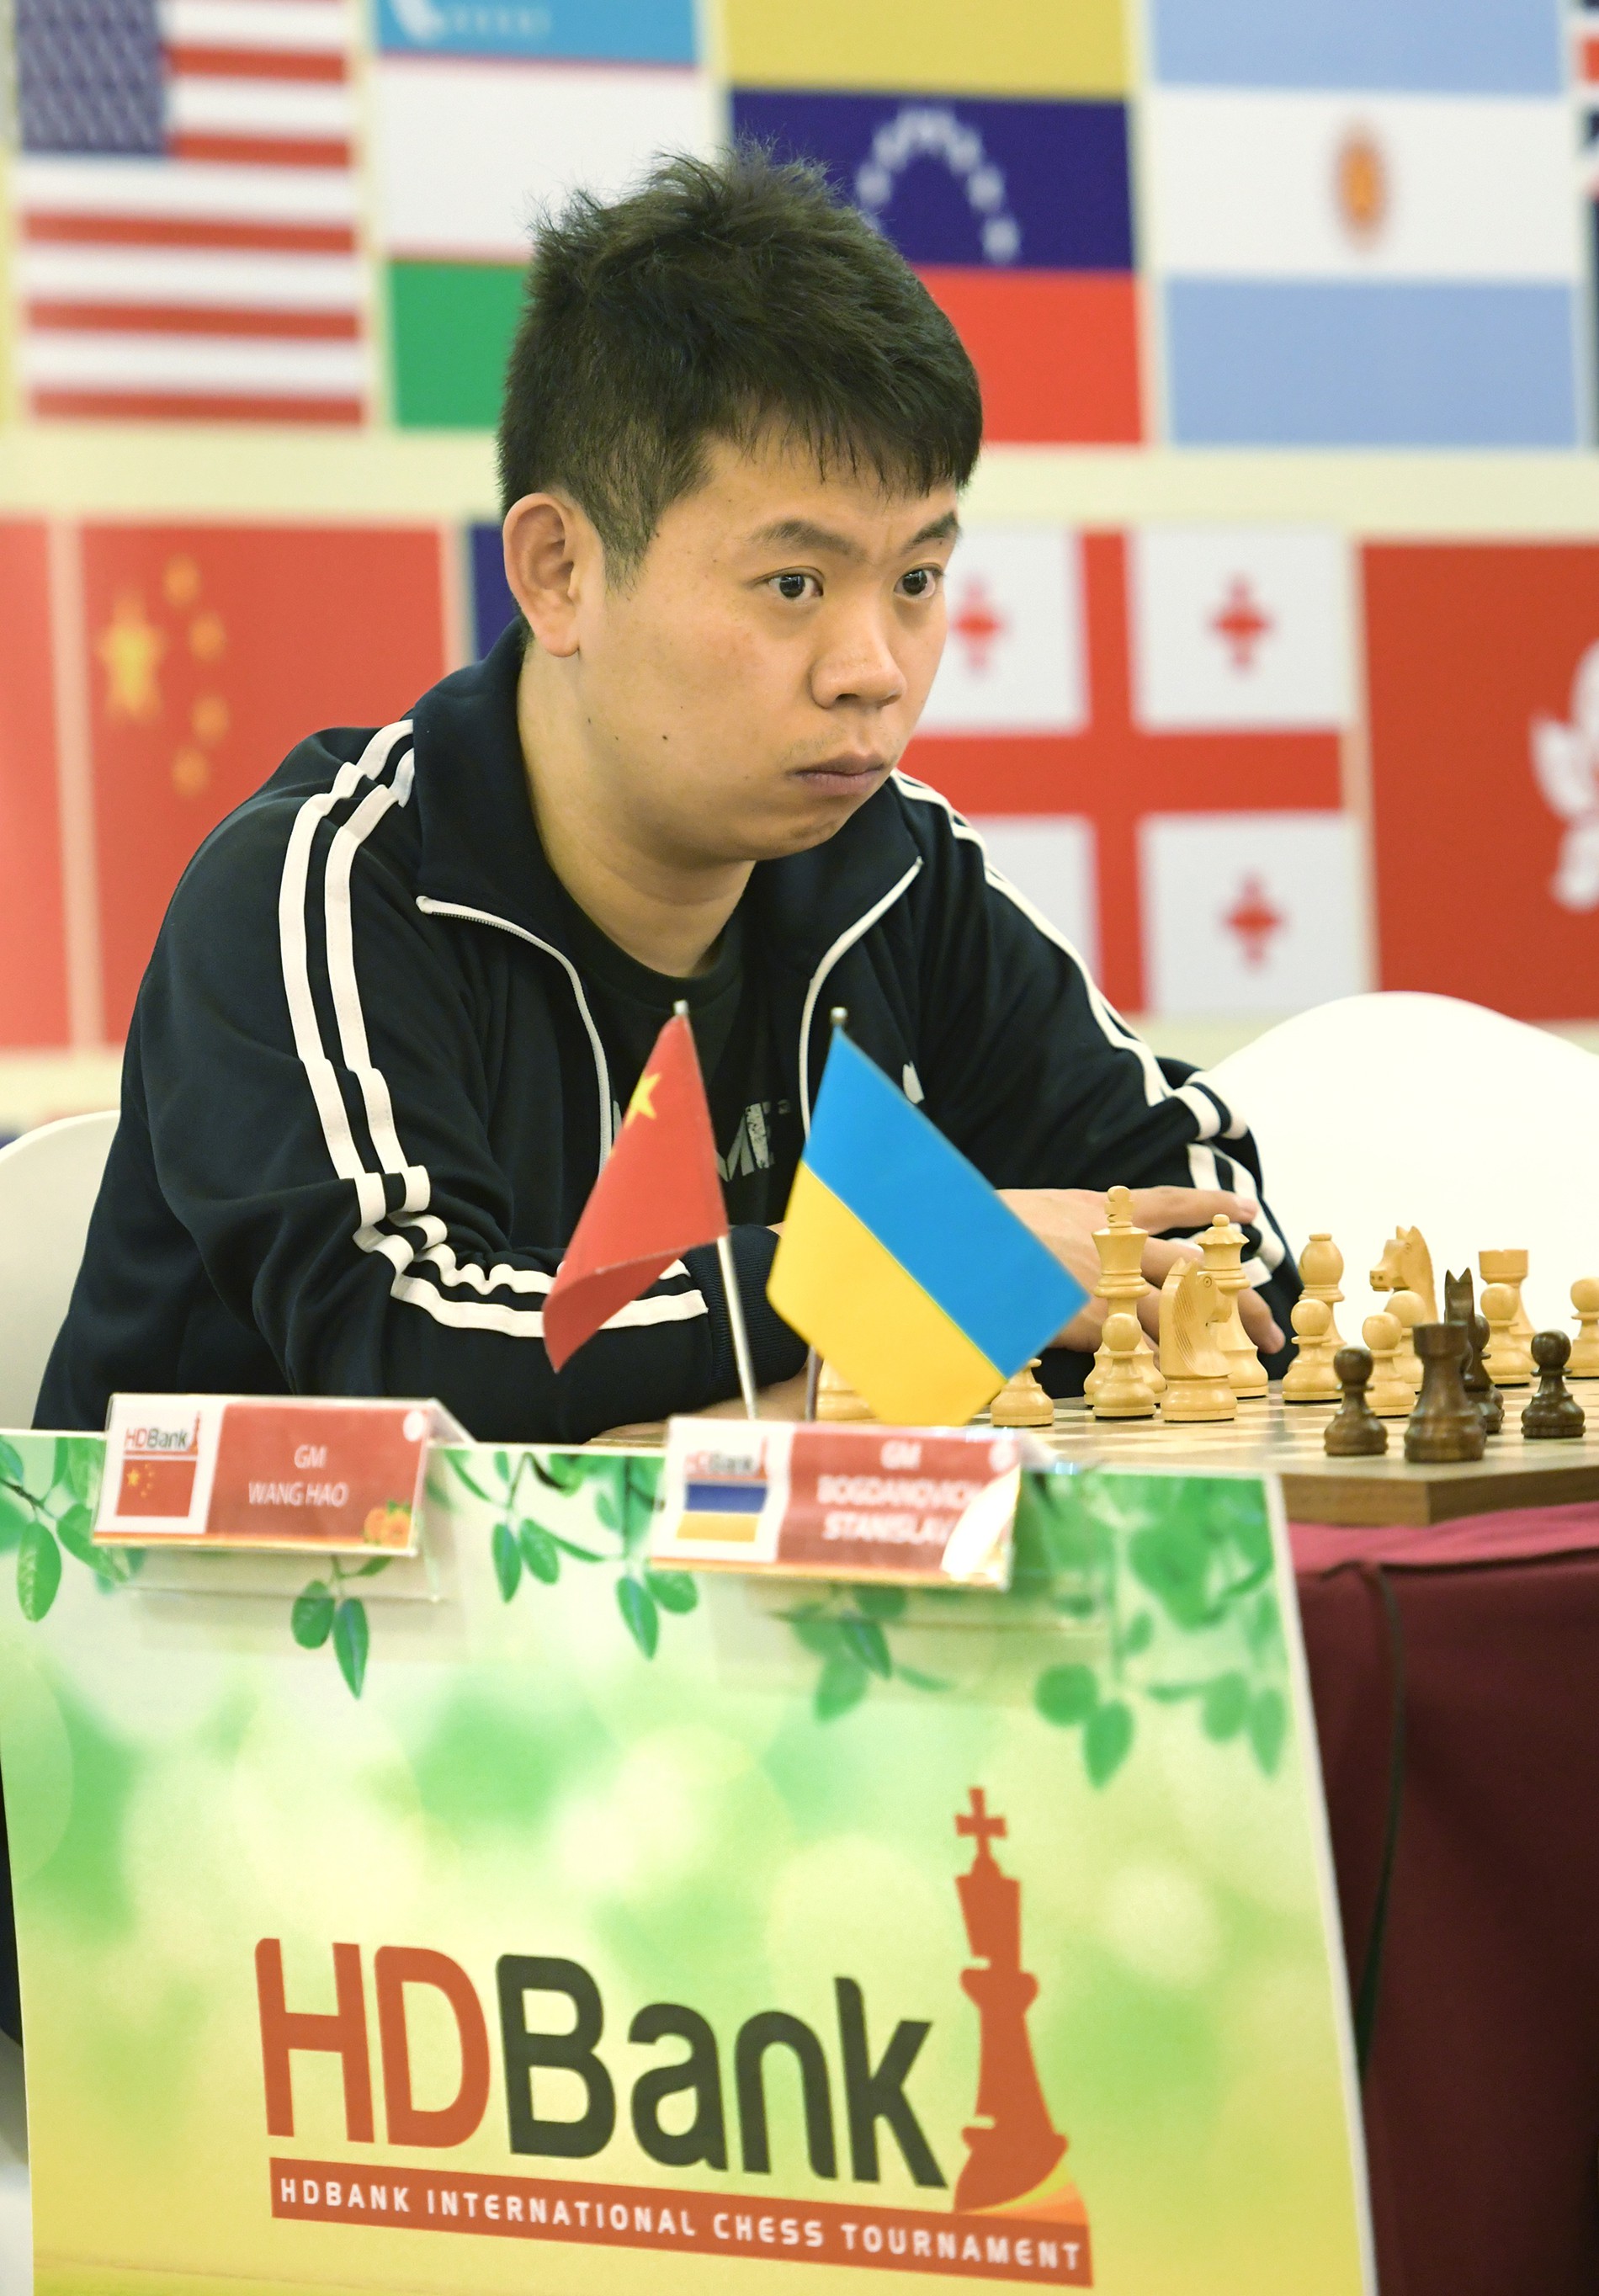 Đương kim vô địch châu Á - Wang Hao đăng quang giải cờ vua quốc tế tại Việt Nam - Ảnh 3.